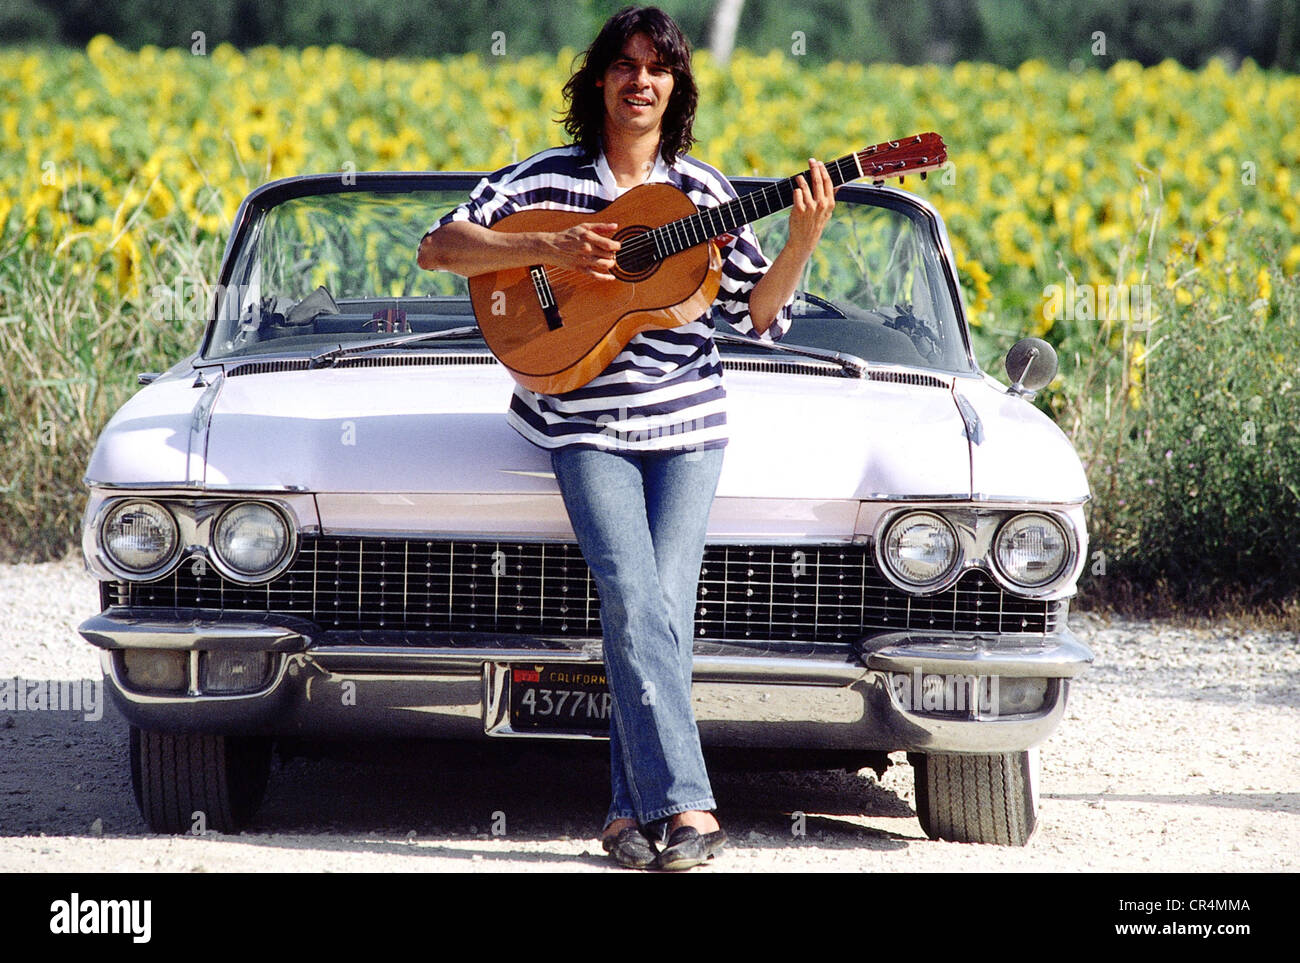 Gypsy Kings, groupe de musique française, Canut Reyes, membre du groupe, avec guitare, pleine longueur devant sa voiture, Arles, France, 1988, Banque D'Images